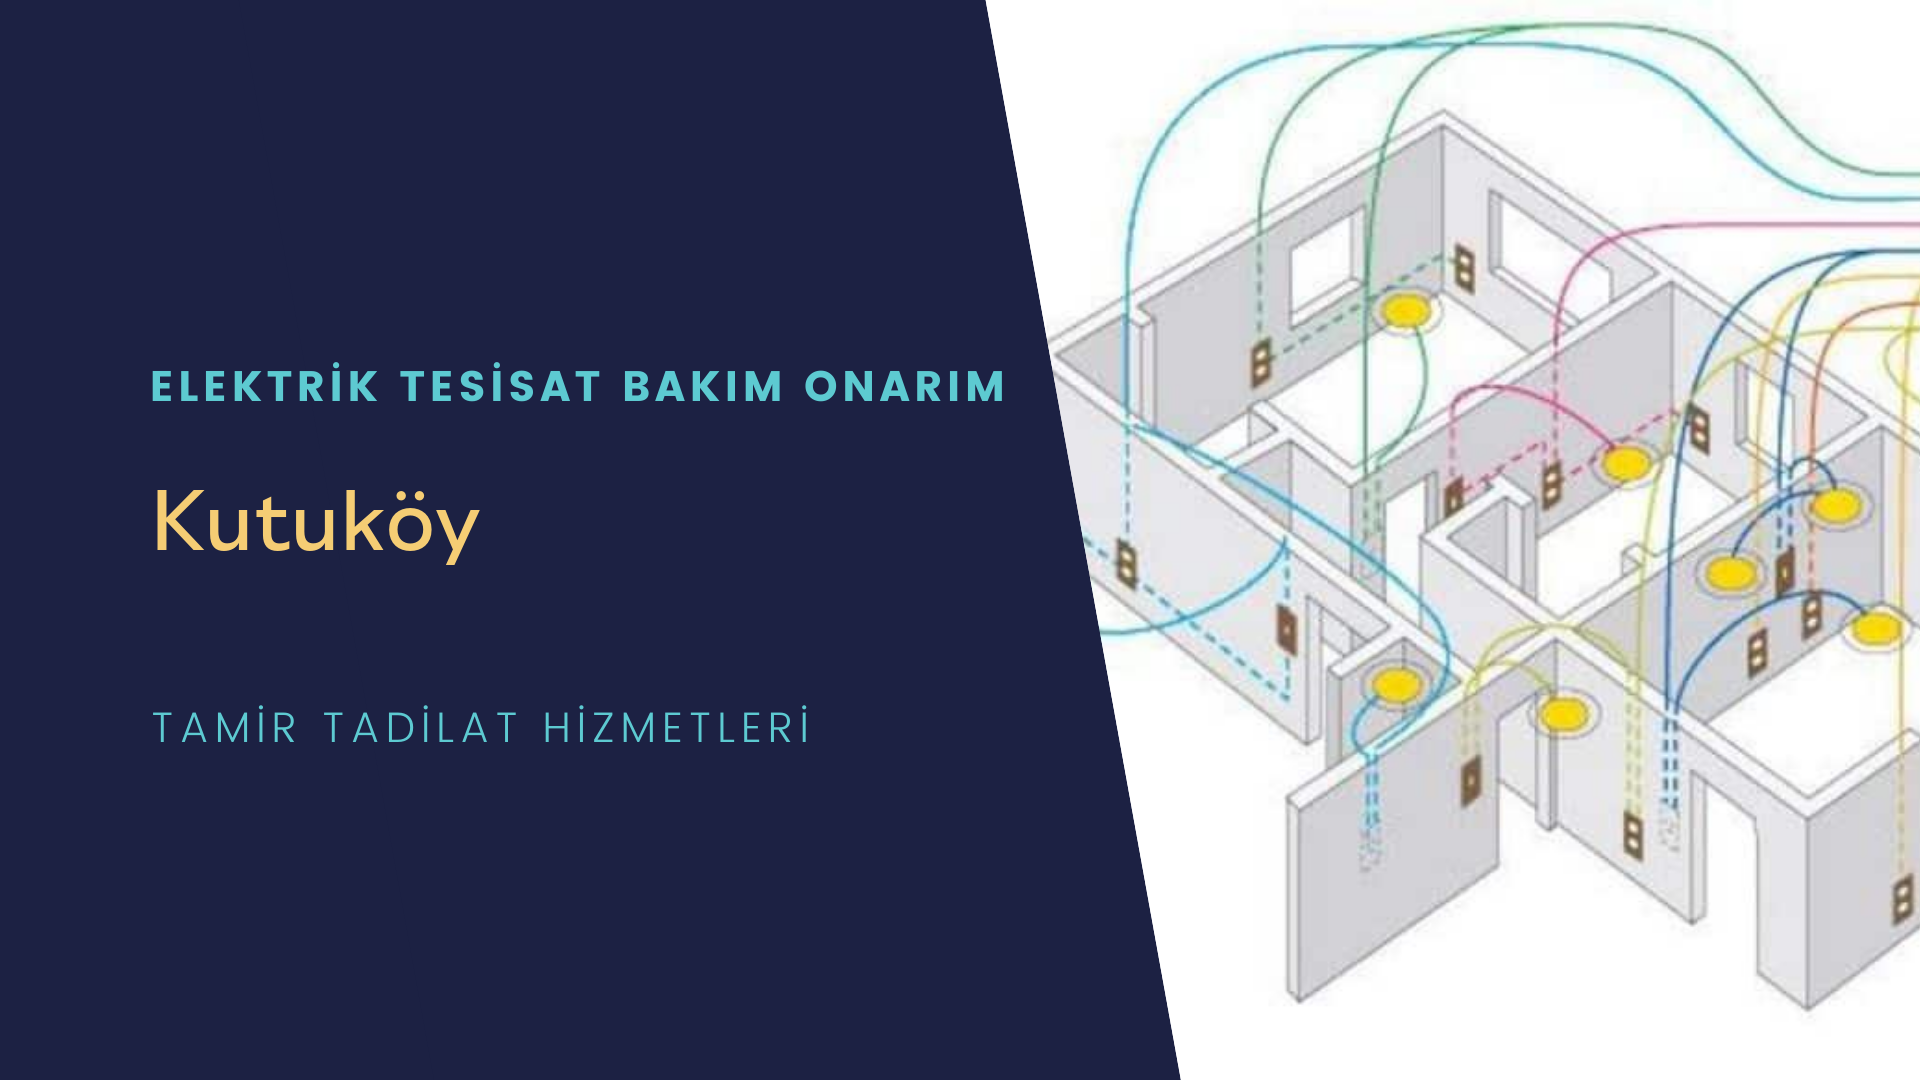 Kutuköy'de elektrik tesisatı ustalarımı arıyorsunuz doğru adrestenizi Kutuköy elektrik tesisatı ustalarımız 7/24 sizlere hizmet vermekten mutluluk duyar.